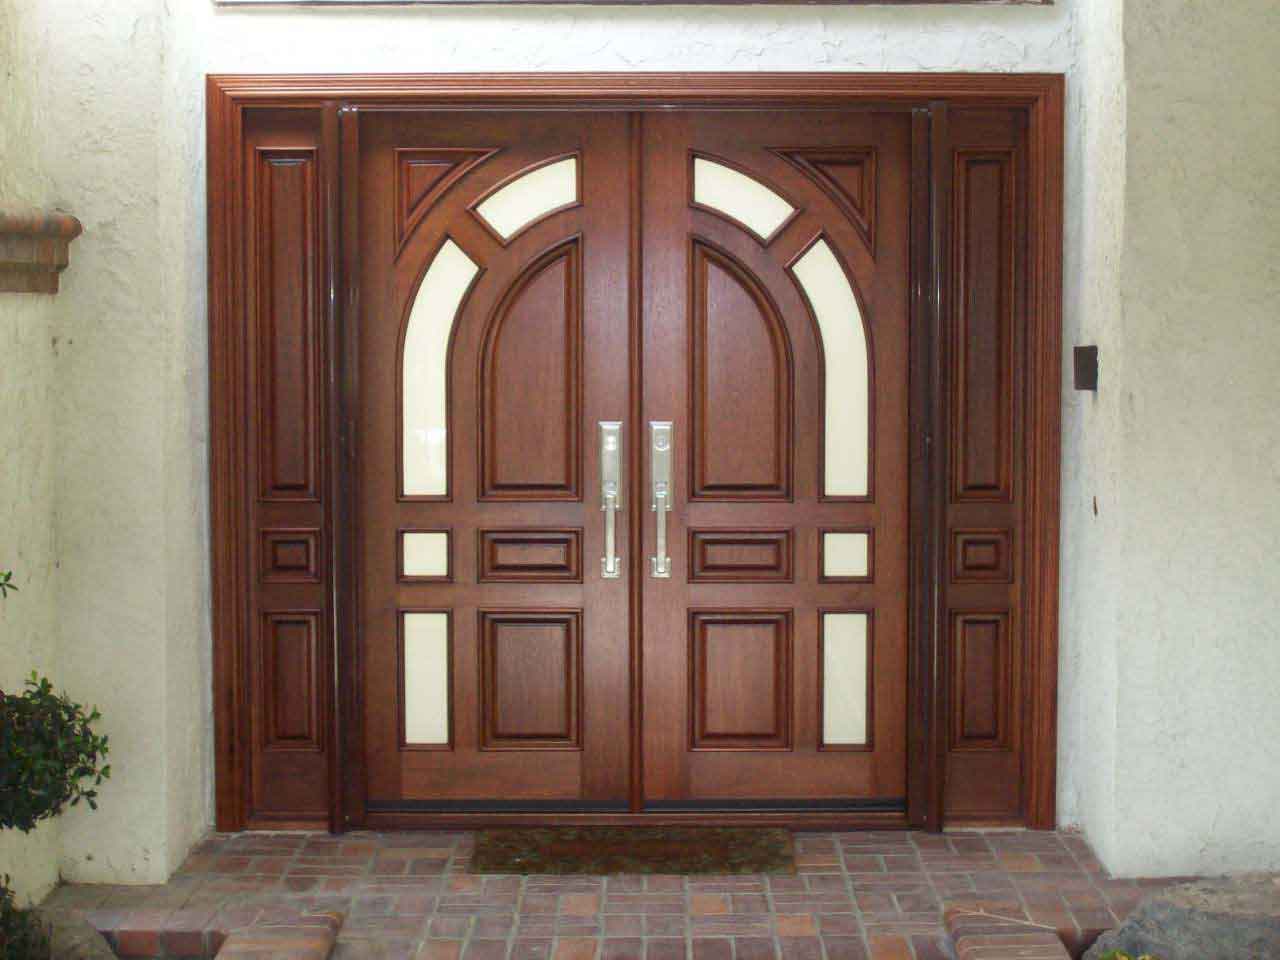 An elegant door entrance